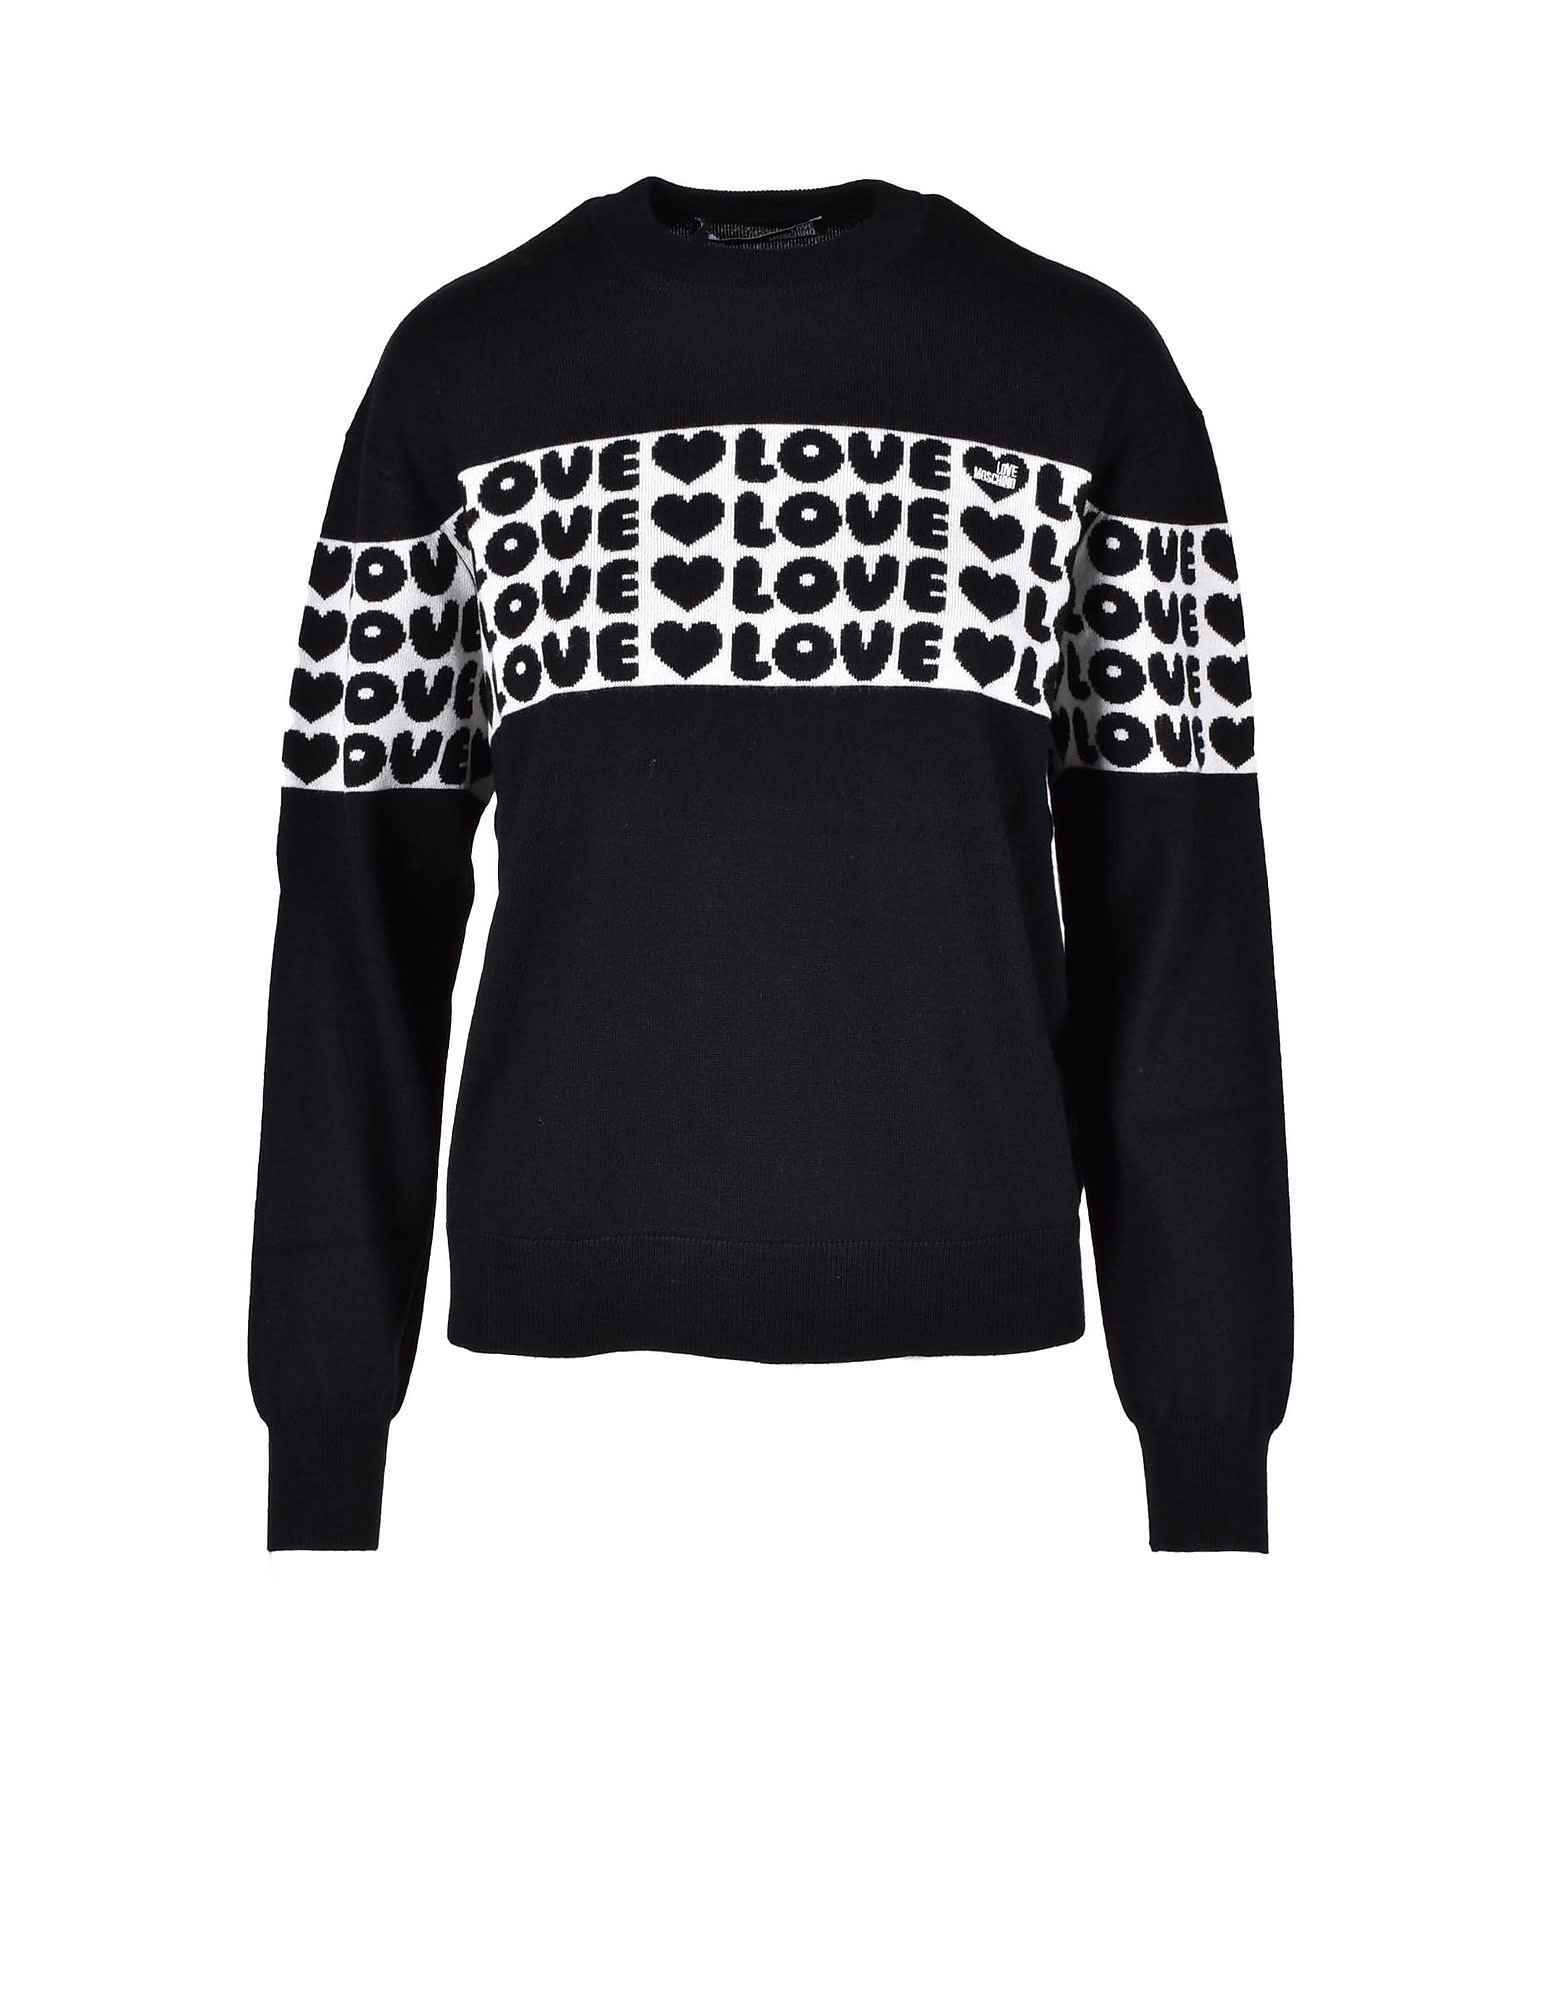 Love Moschino Womens Black White Sweater